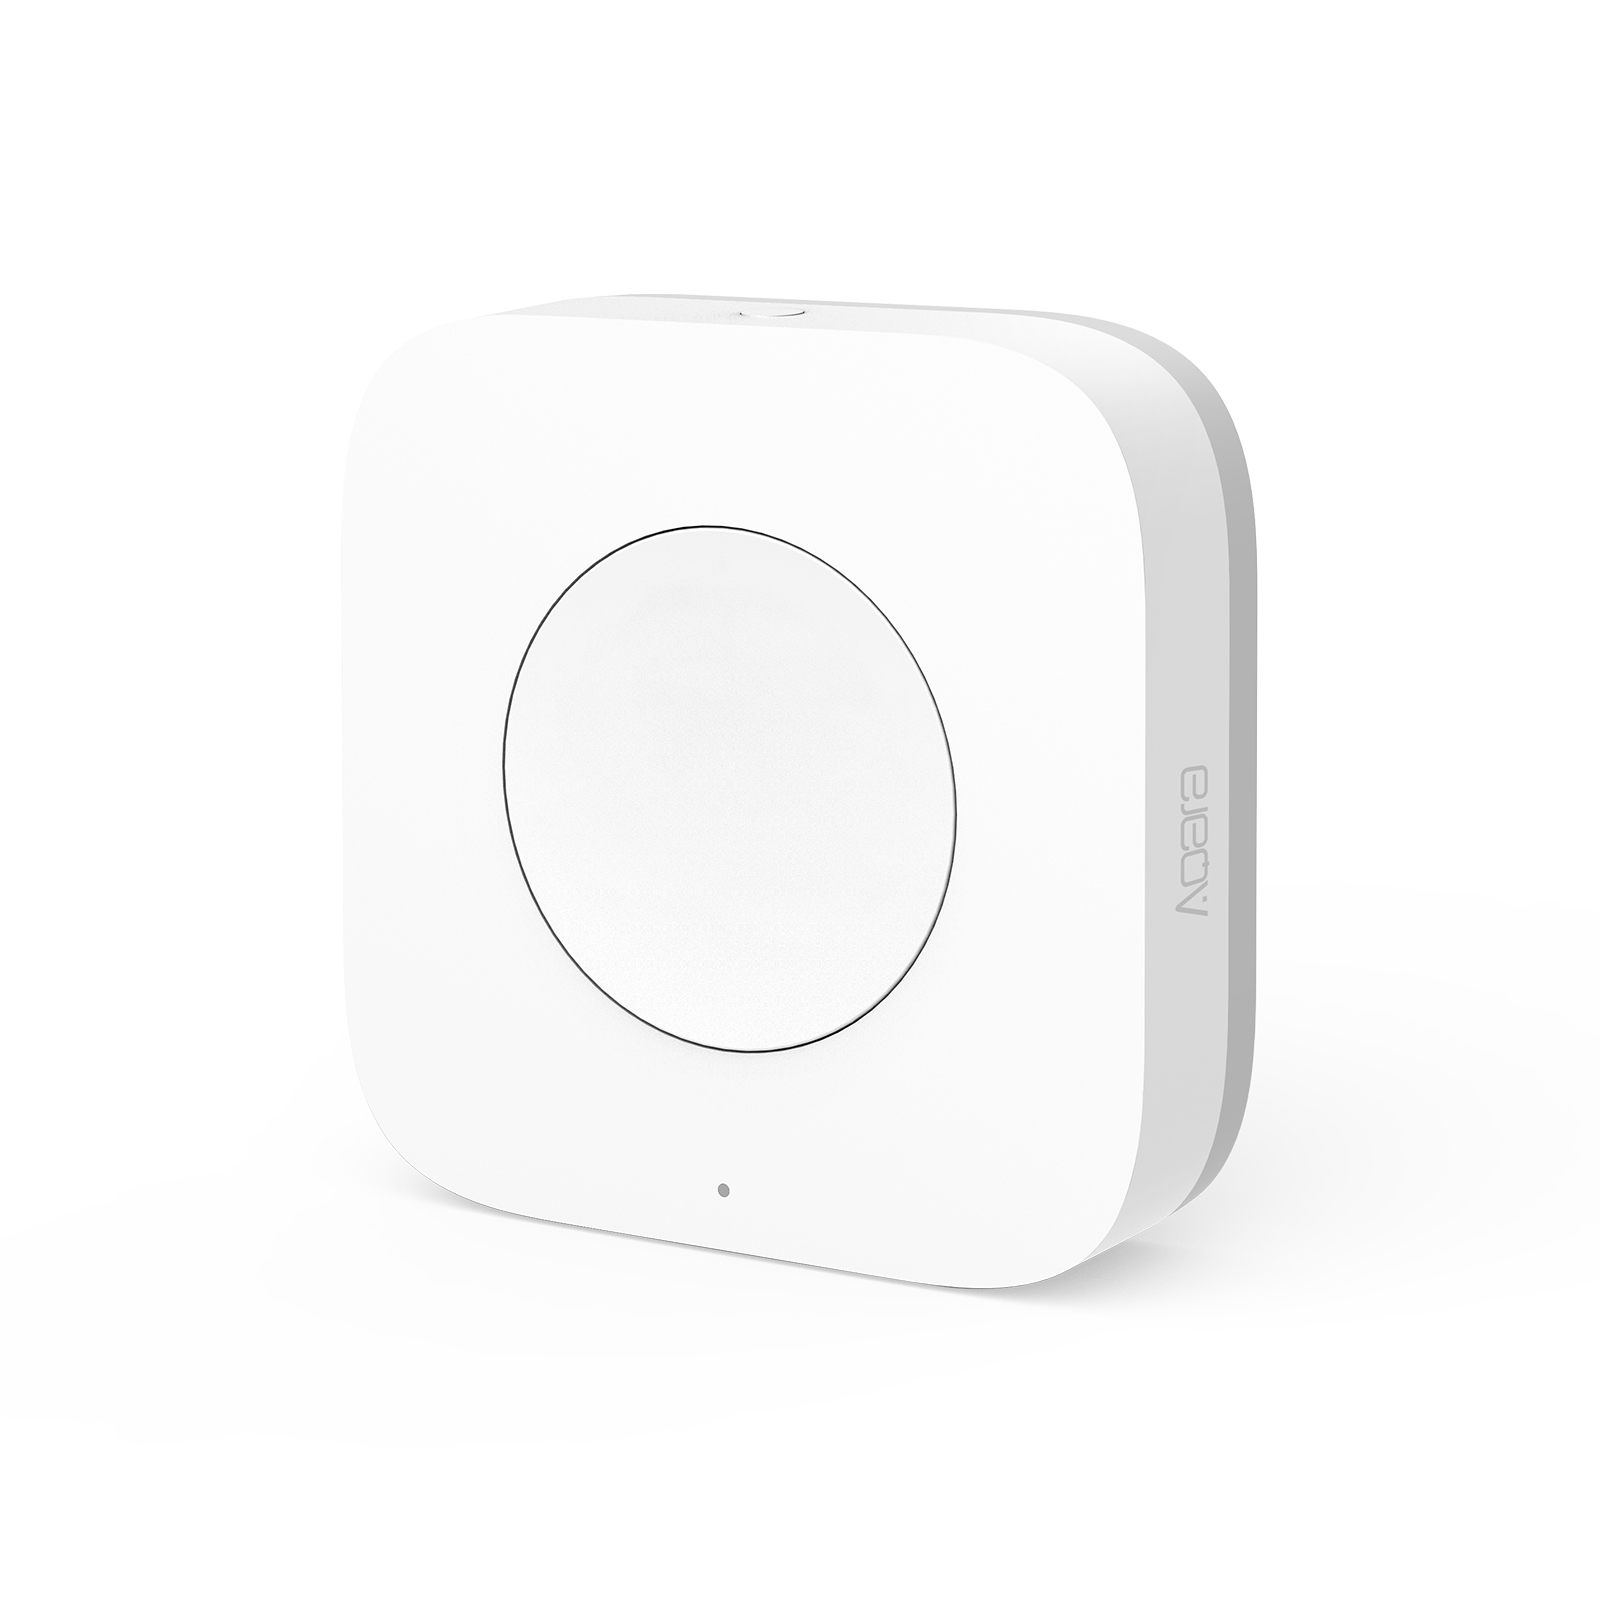 Беспроводная кнопка-выключатель Aqara Wireless Switch Mini (WXKG11LM) кнопка управления aqara smart wireless switch key wxkg12lm white